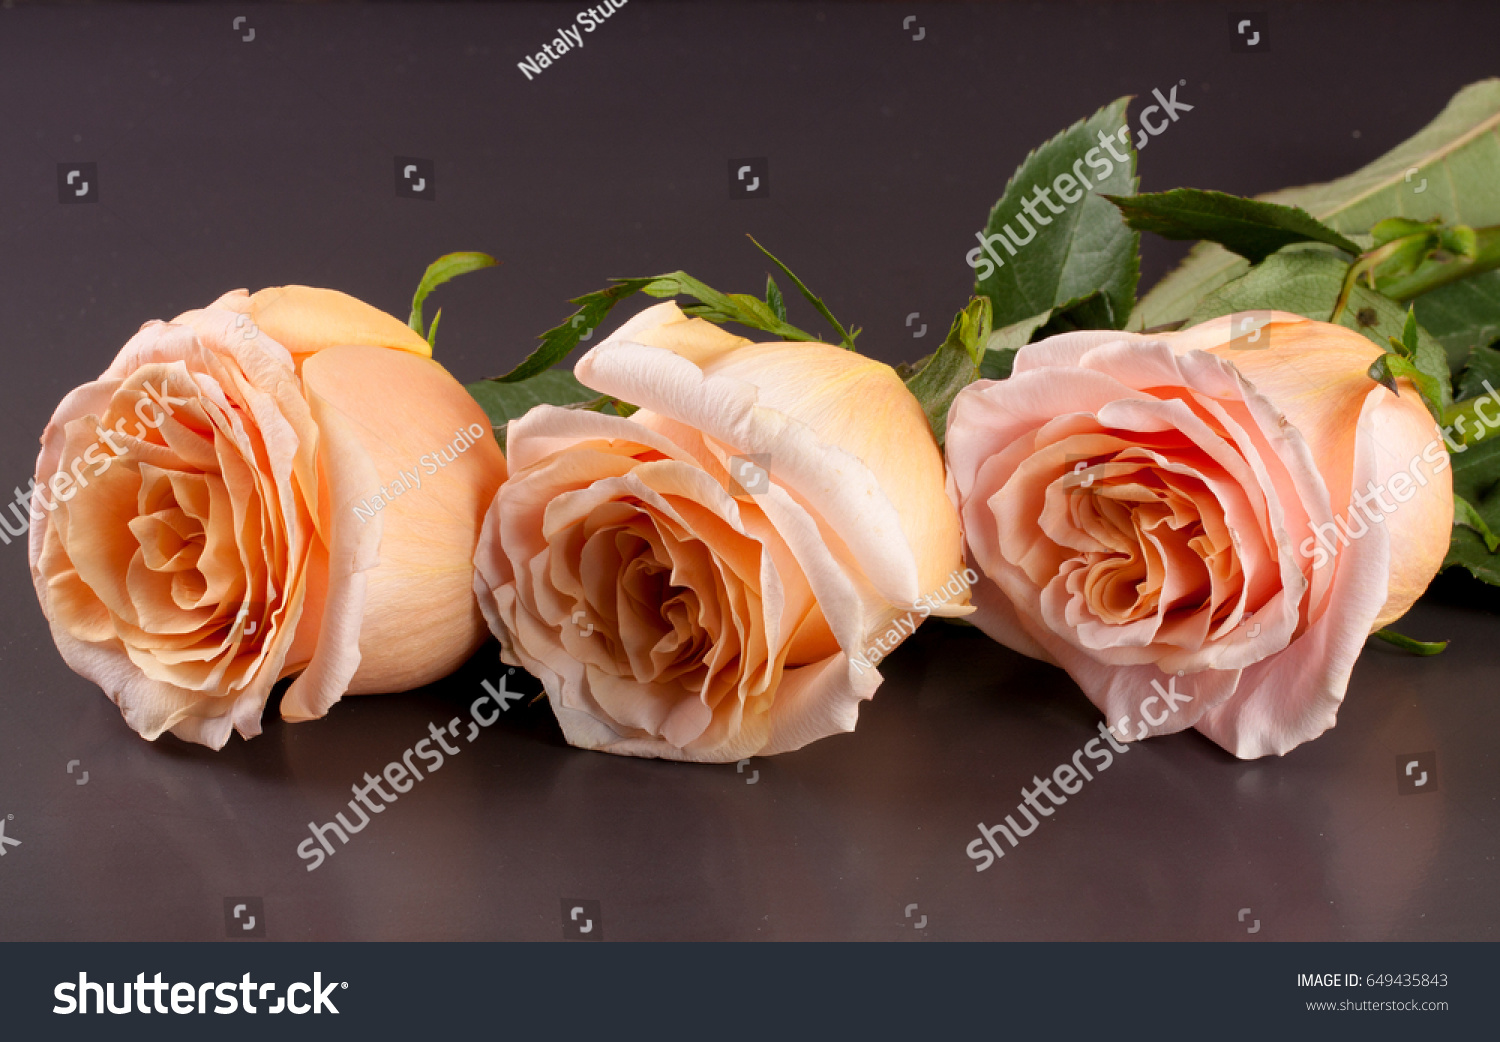 three fresh beige roses on a dark wooden background #649435843